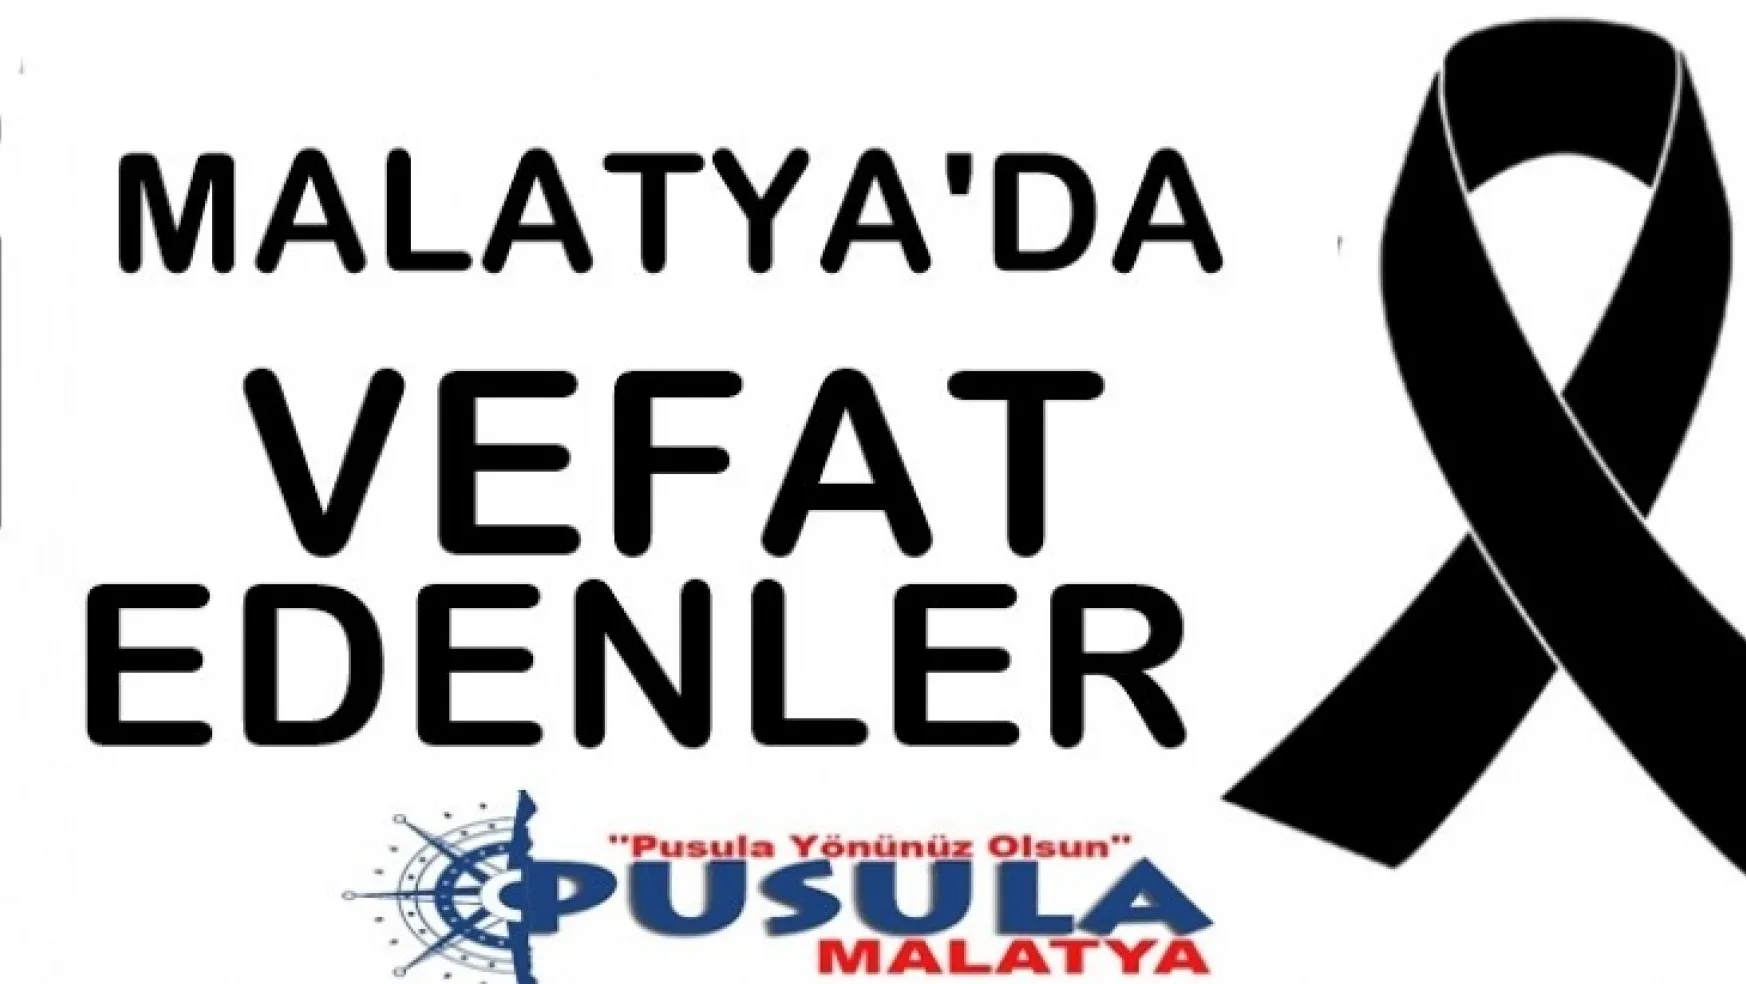 Malatya'da 31 kişi vefat etti